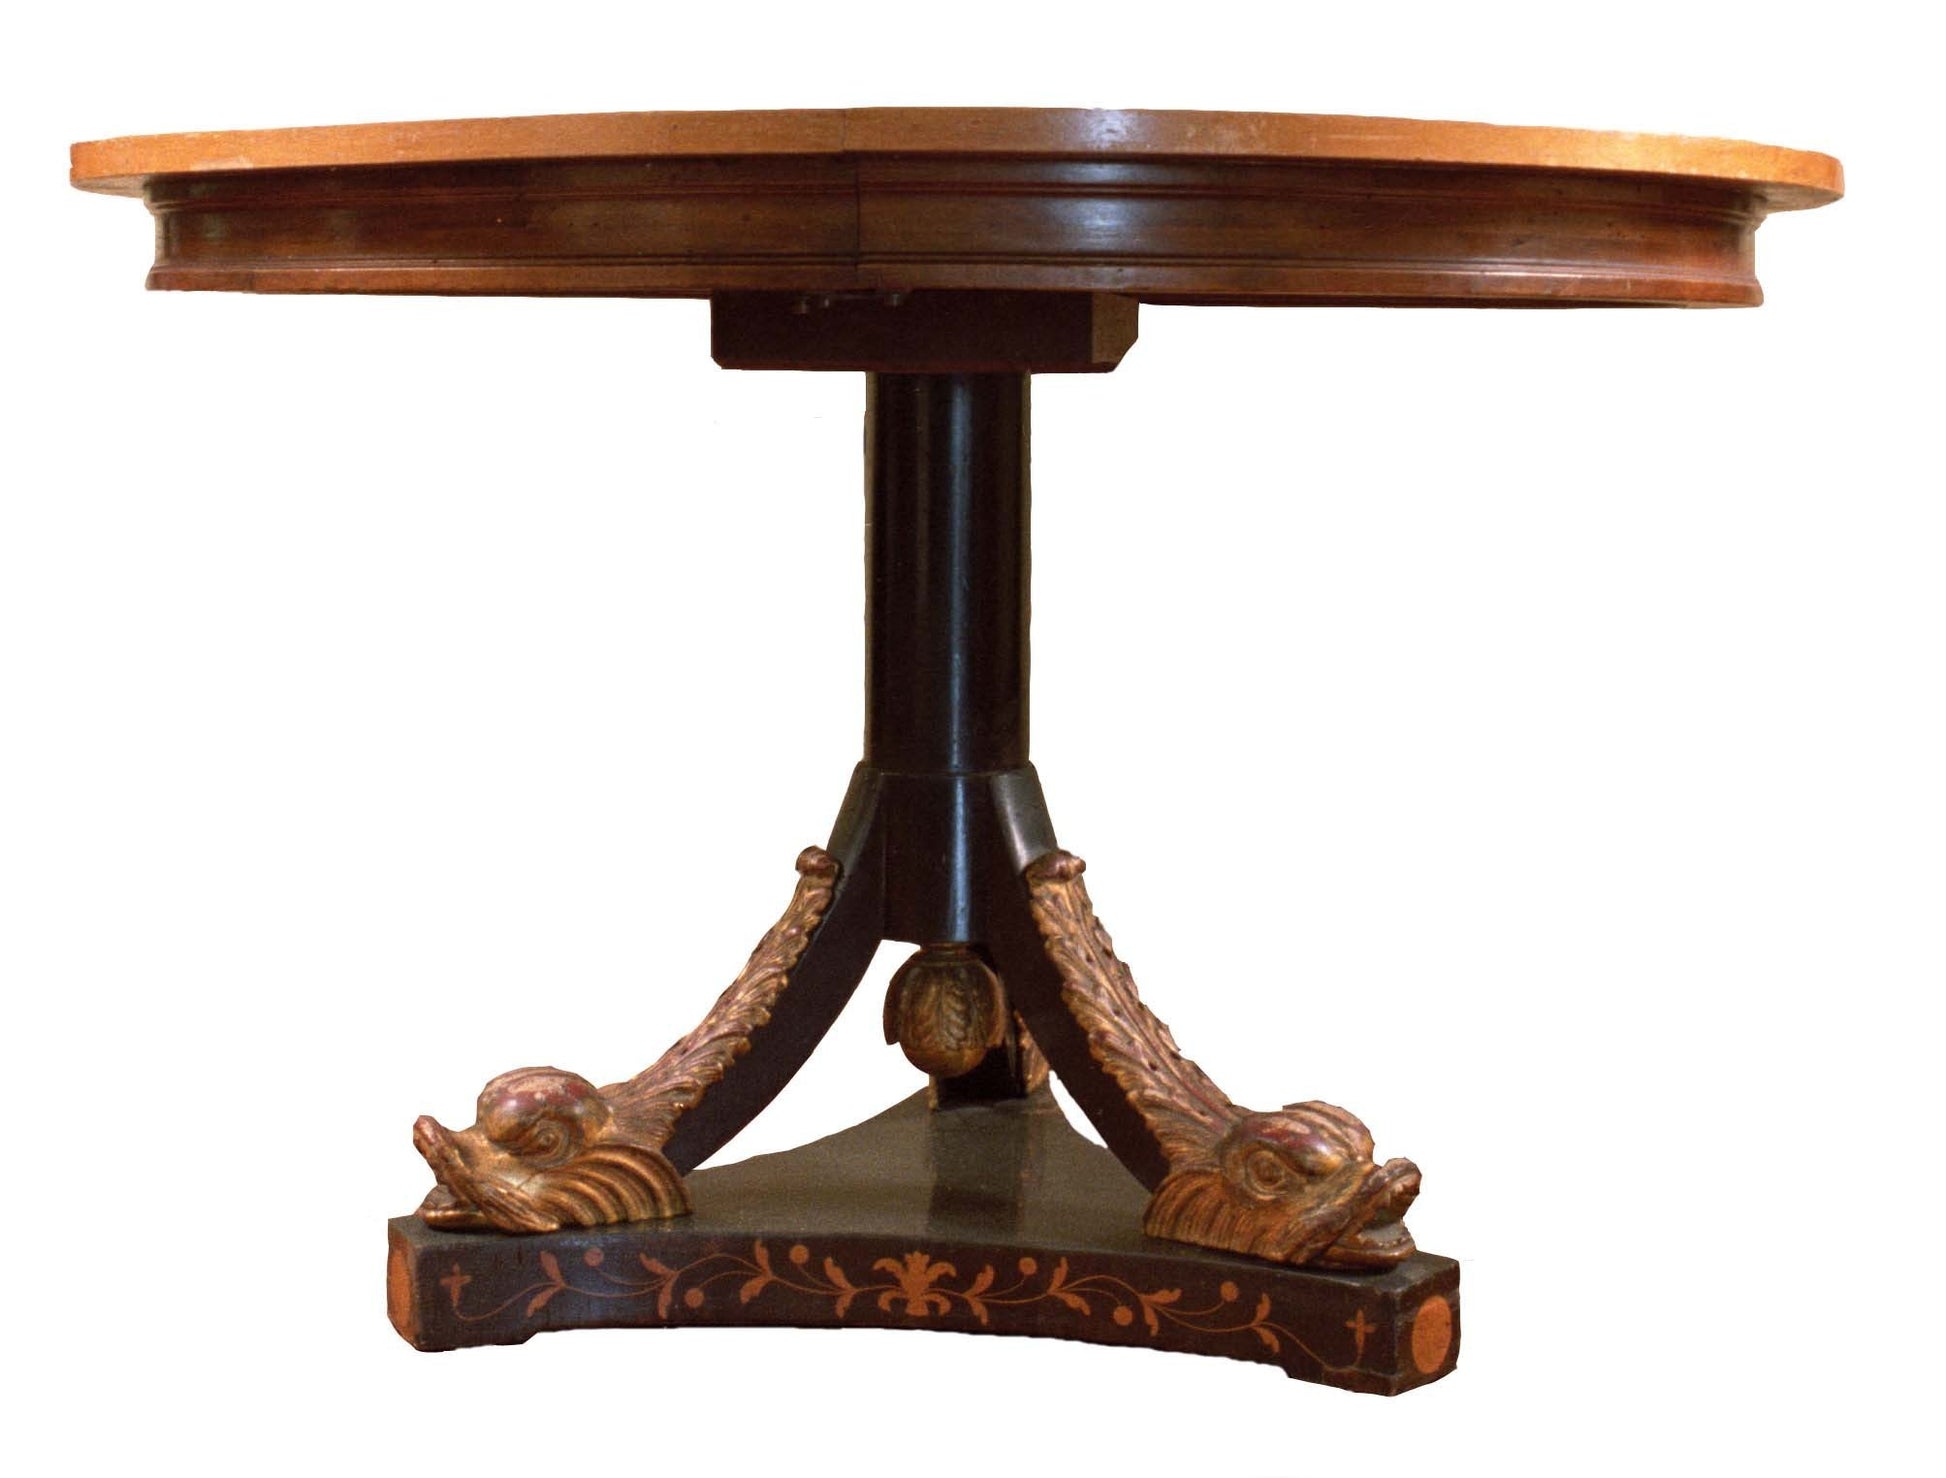 Antico tavolo circolare allungabile austriaco del 1800 in ebano e noce